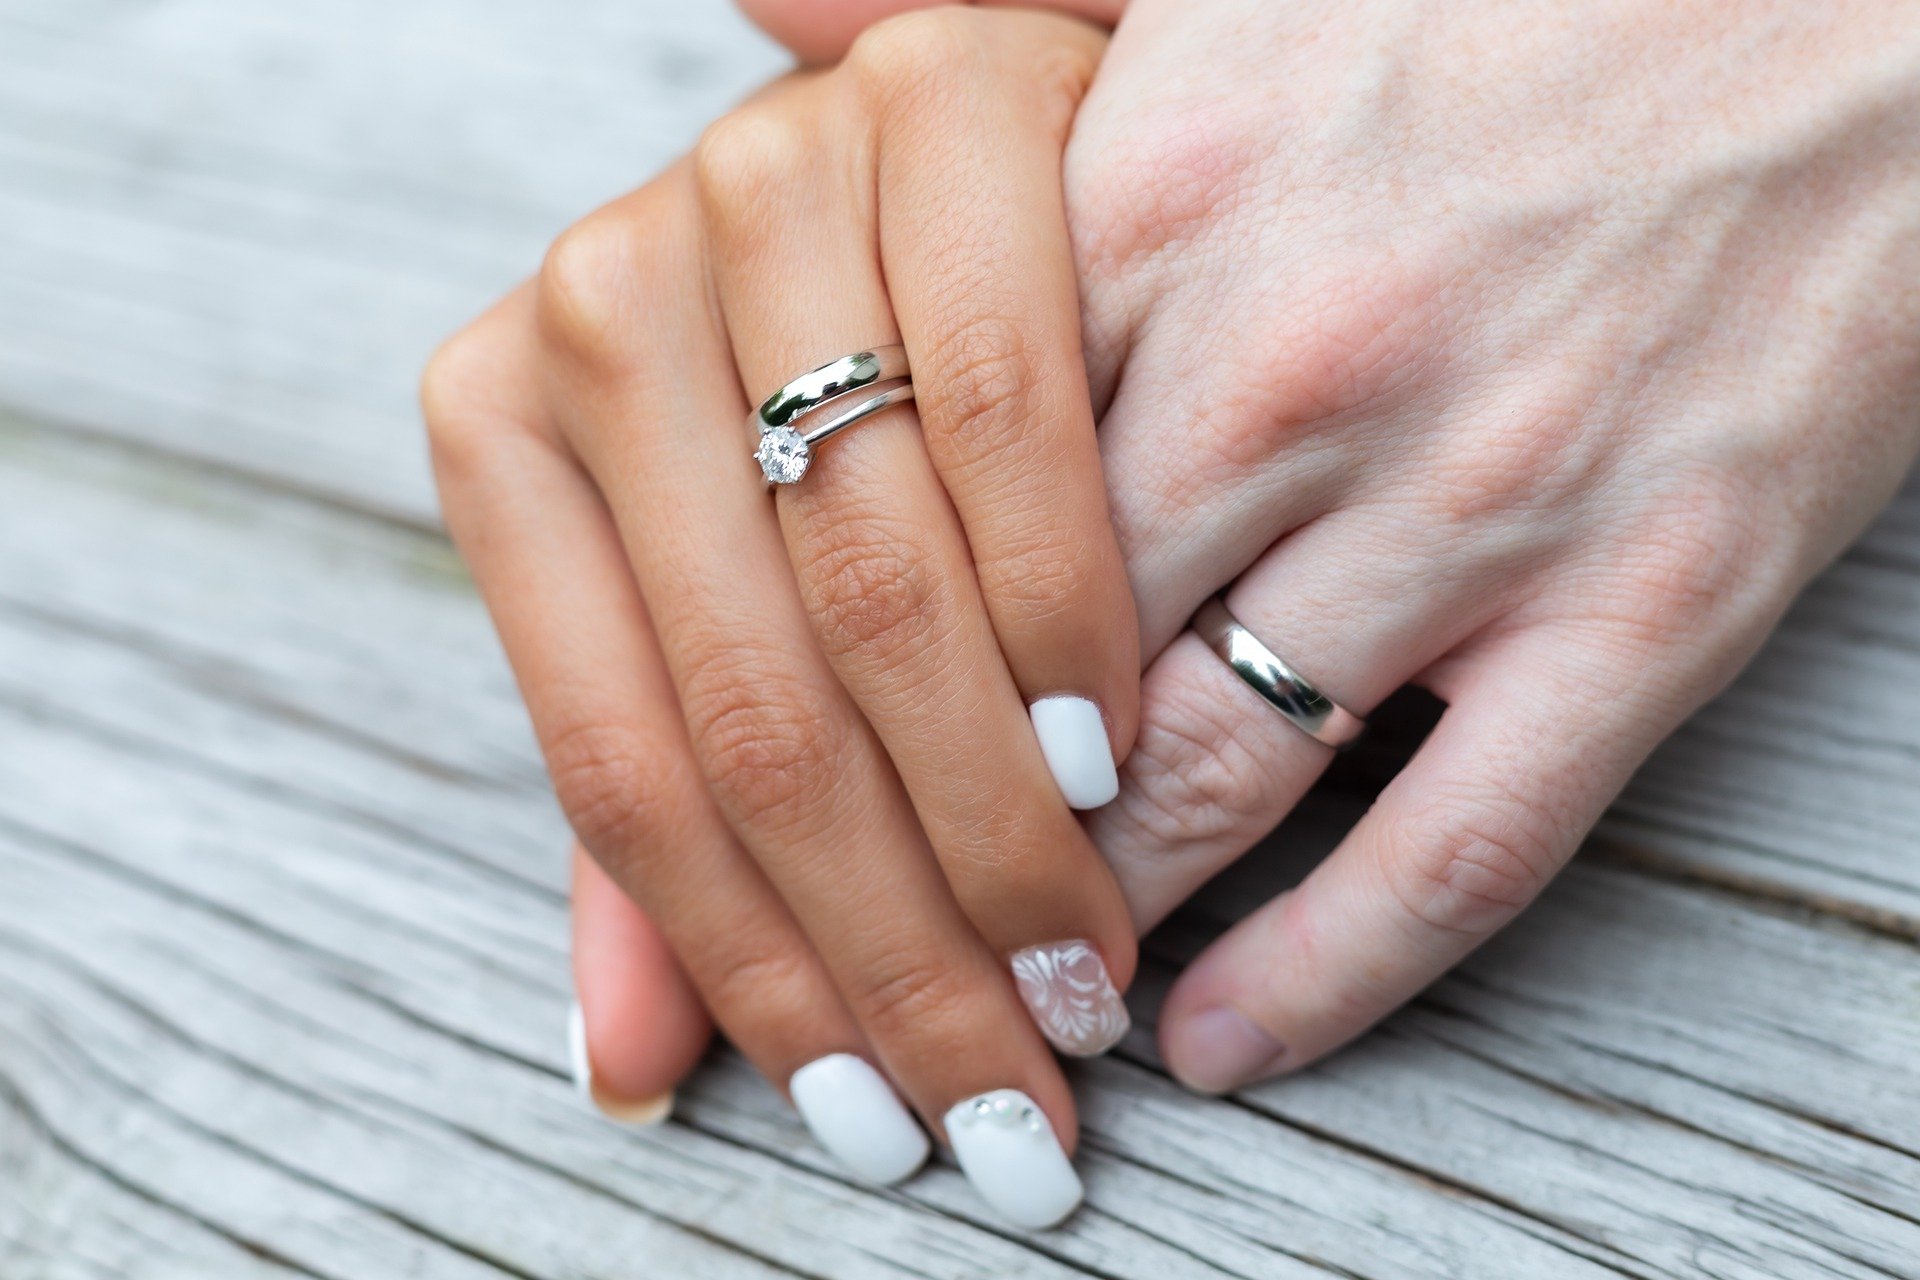 Кольцо на правом безымянном пальце у девушки. Обручальное и помолвочное кольцо. Обручальные кольца на руках. Помолвочное и обручальное кольцо на пальце. Обручальное и помолвочное кольцо вместе.